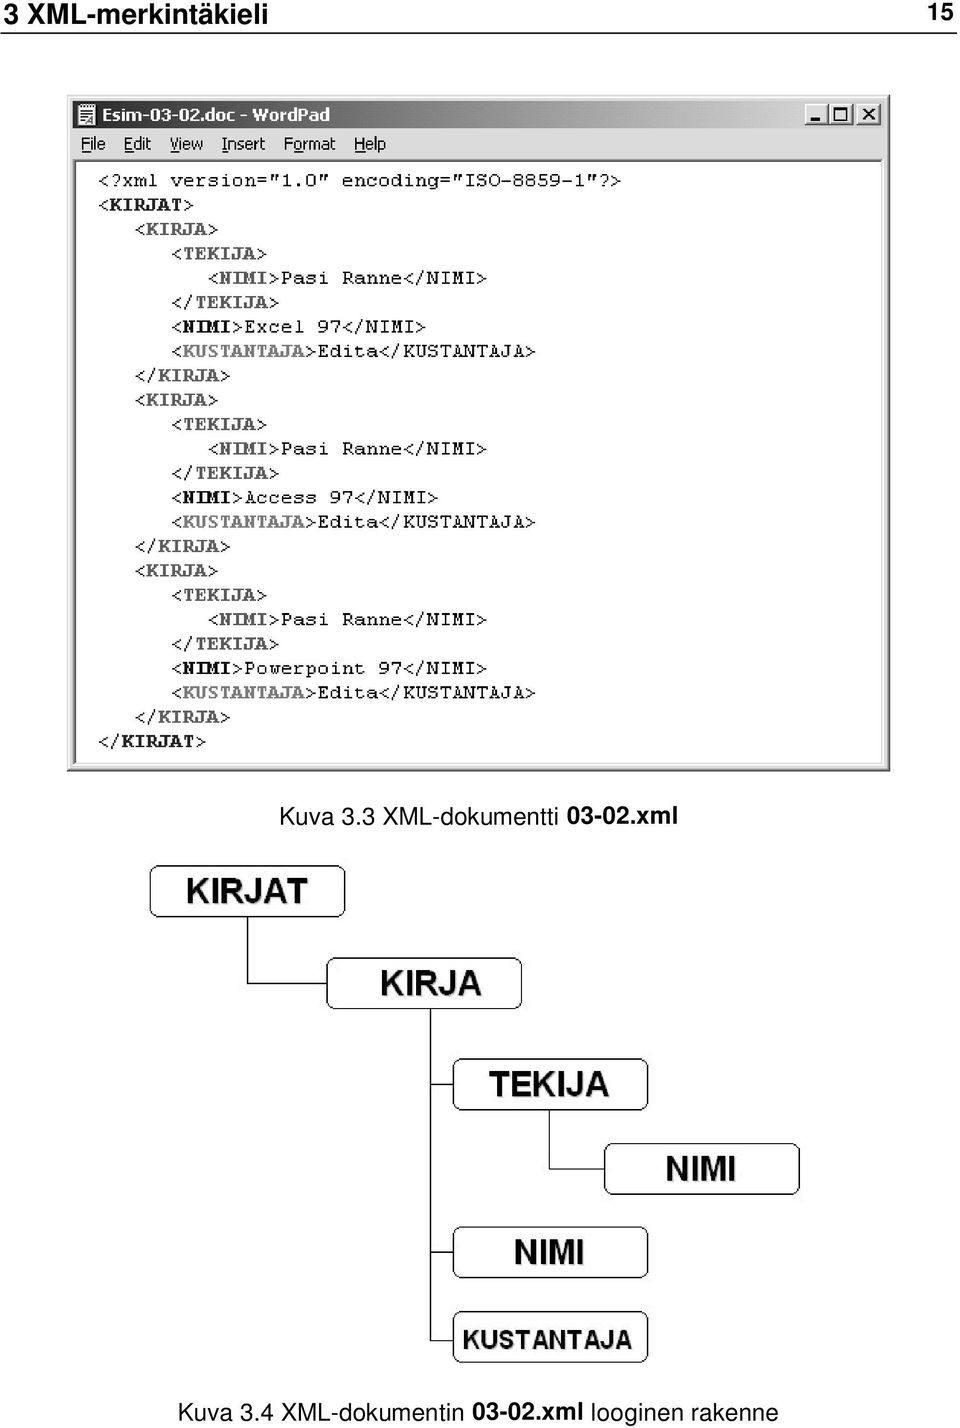 3 XML-dokumentti 03-02.